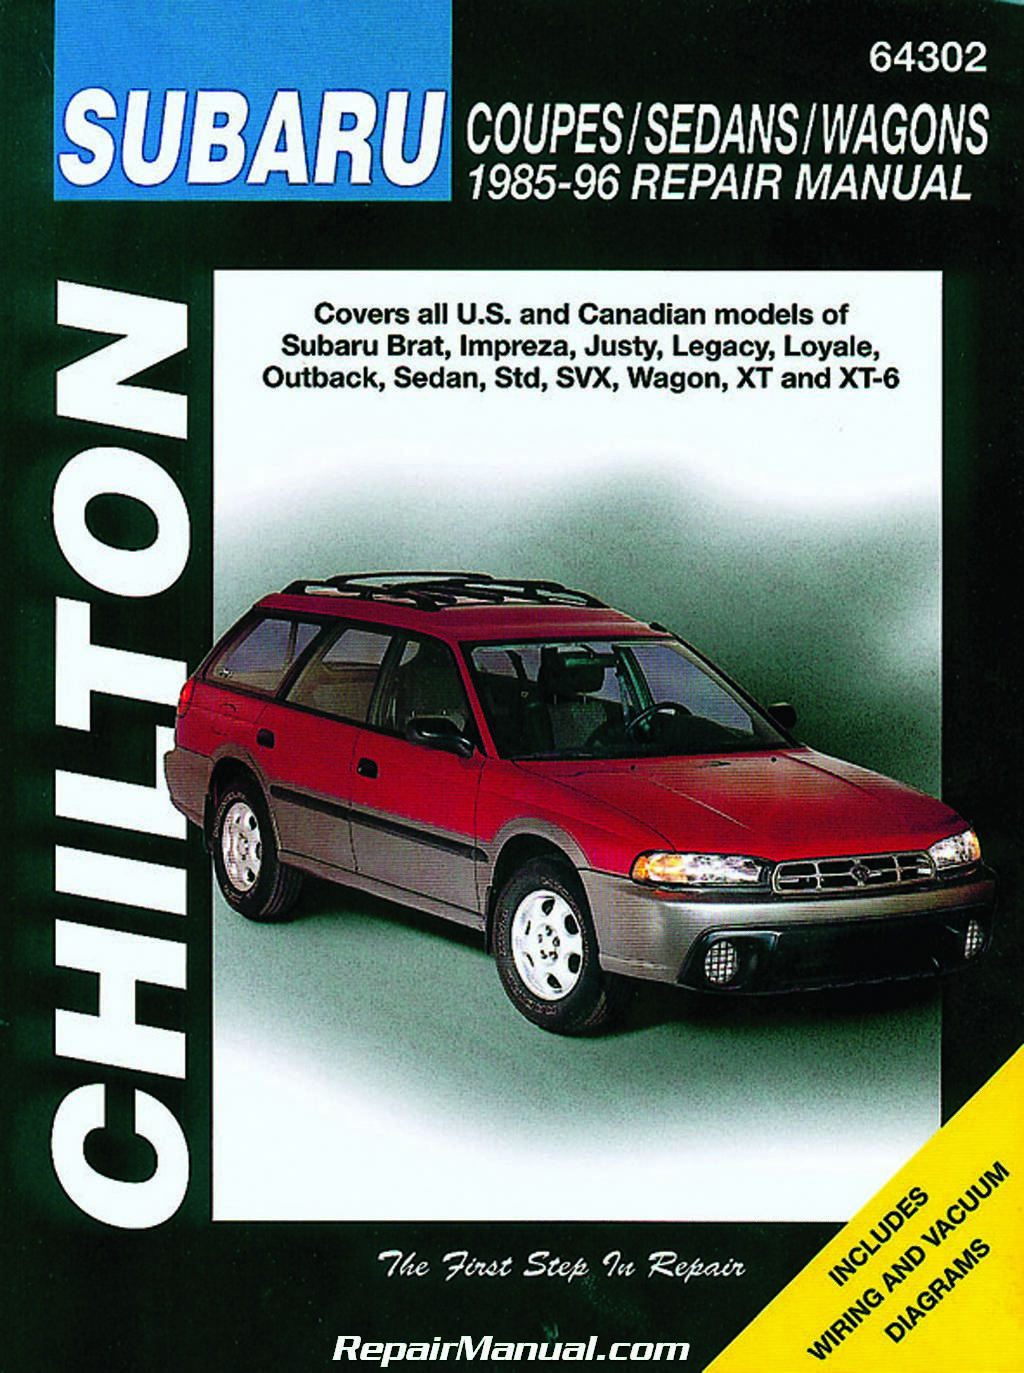 ... Loyale Outback Sedan Std SVX Wagon XT XT-6 1985-1996 Repair Manual